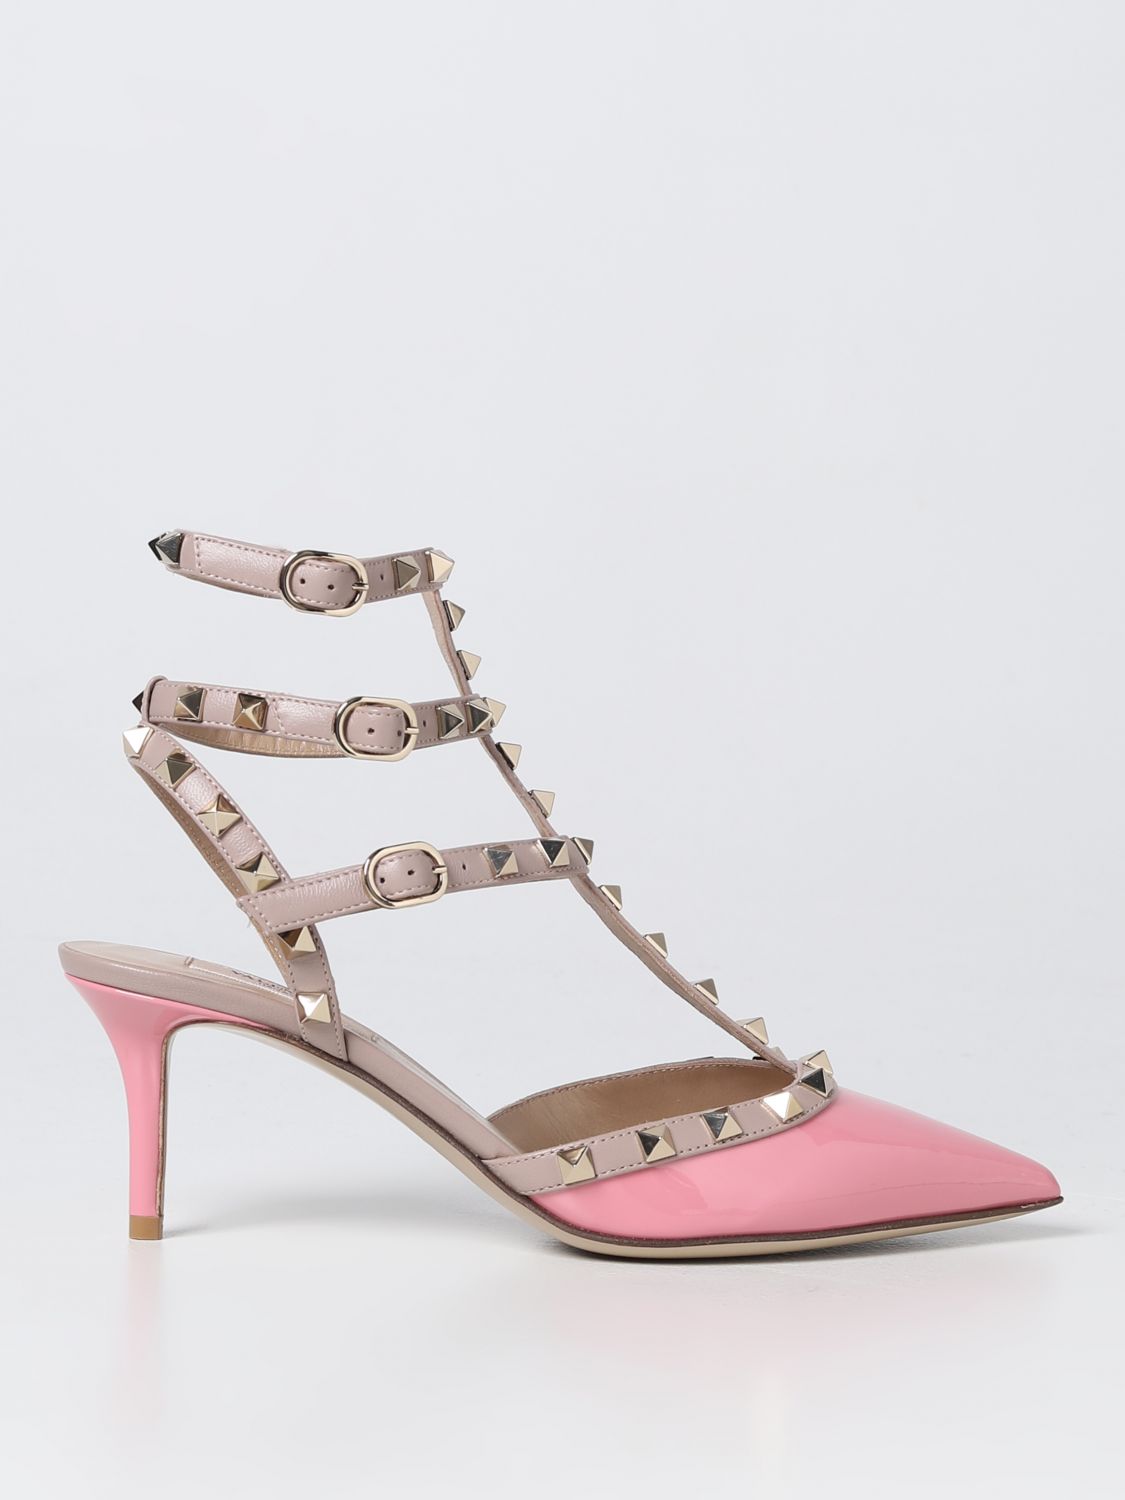 Uitrusten afgunst Prediken VALENTINO GARAVANI: high heel shoes for woman - Pink | Valentino Garavani  high heel shoes 2W2S0375VNW online on GIGLIO.COM